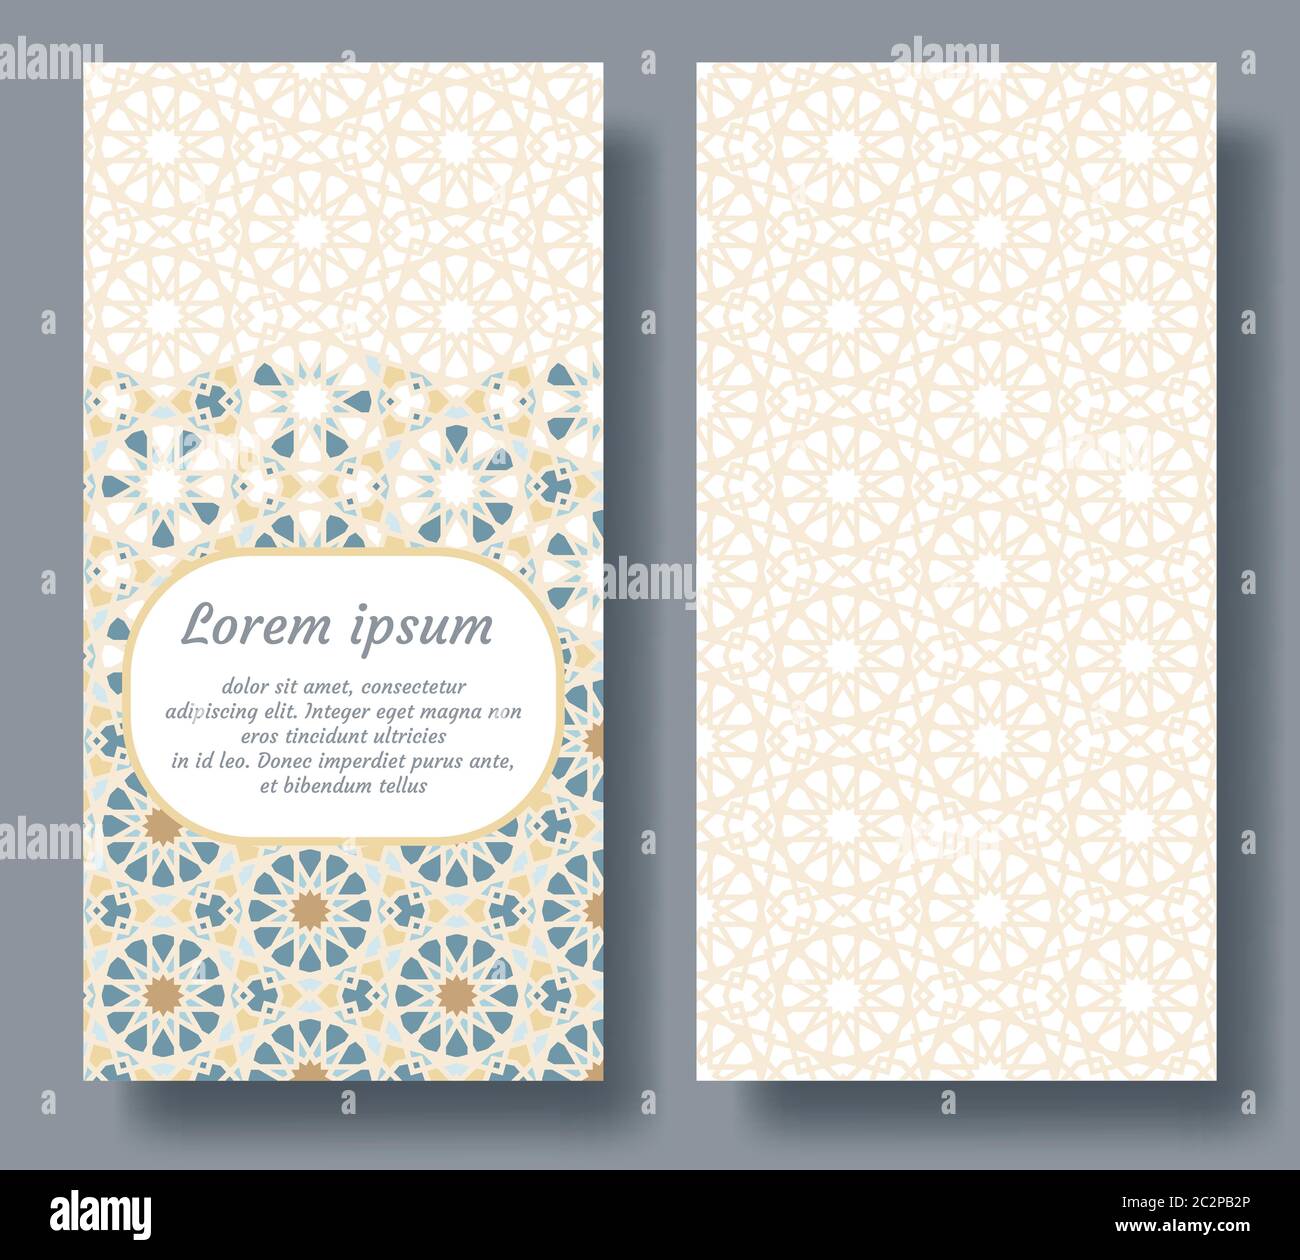 Arabisch Doppel-Karte Design für Einladung, Feier, speichern Sie das Datum, Hochzeit in arabisch geometrischen Mosaik durchgeführt Stock Vektor